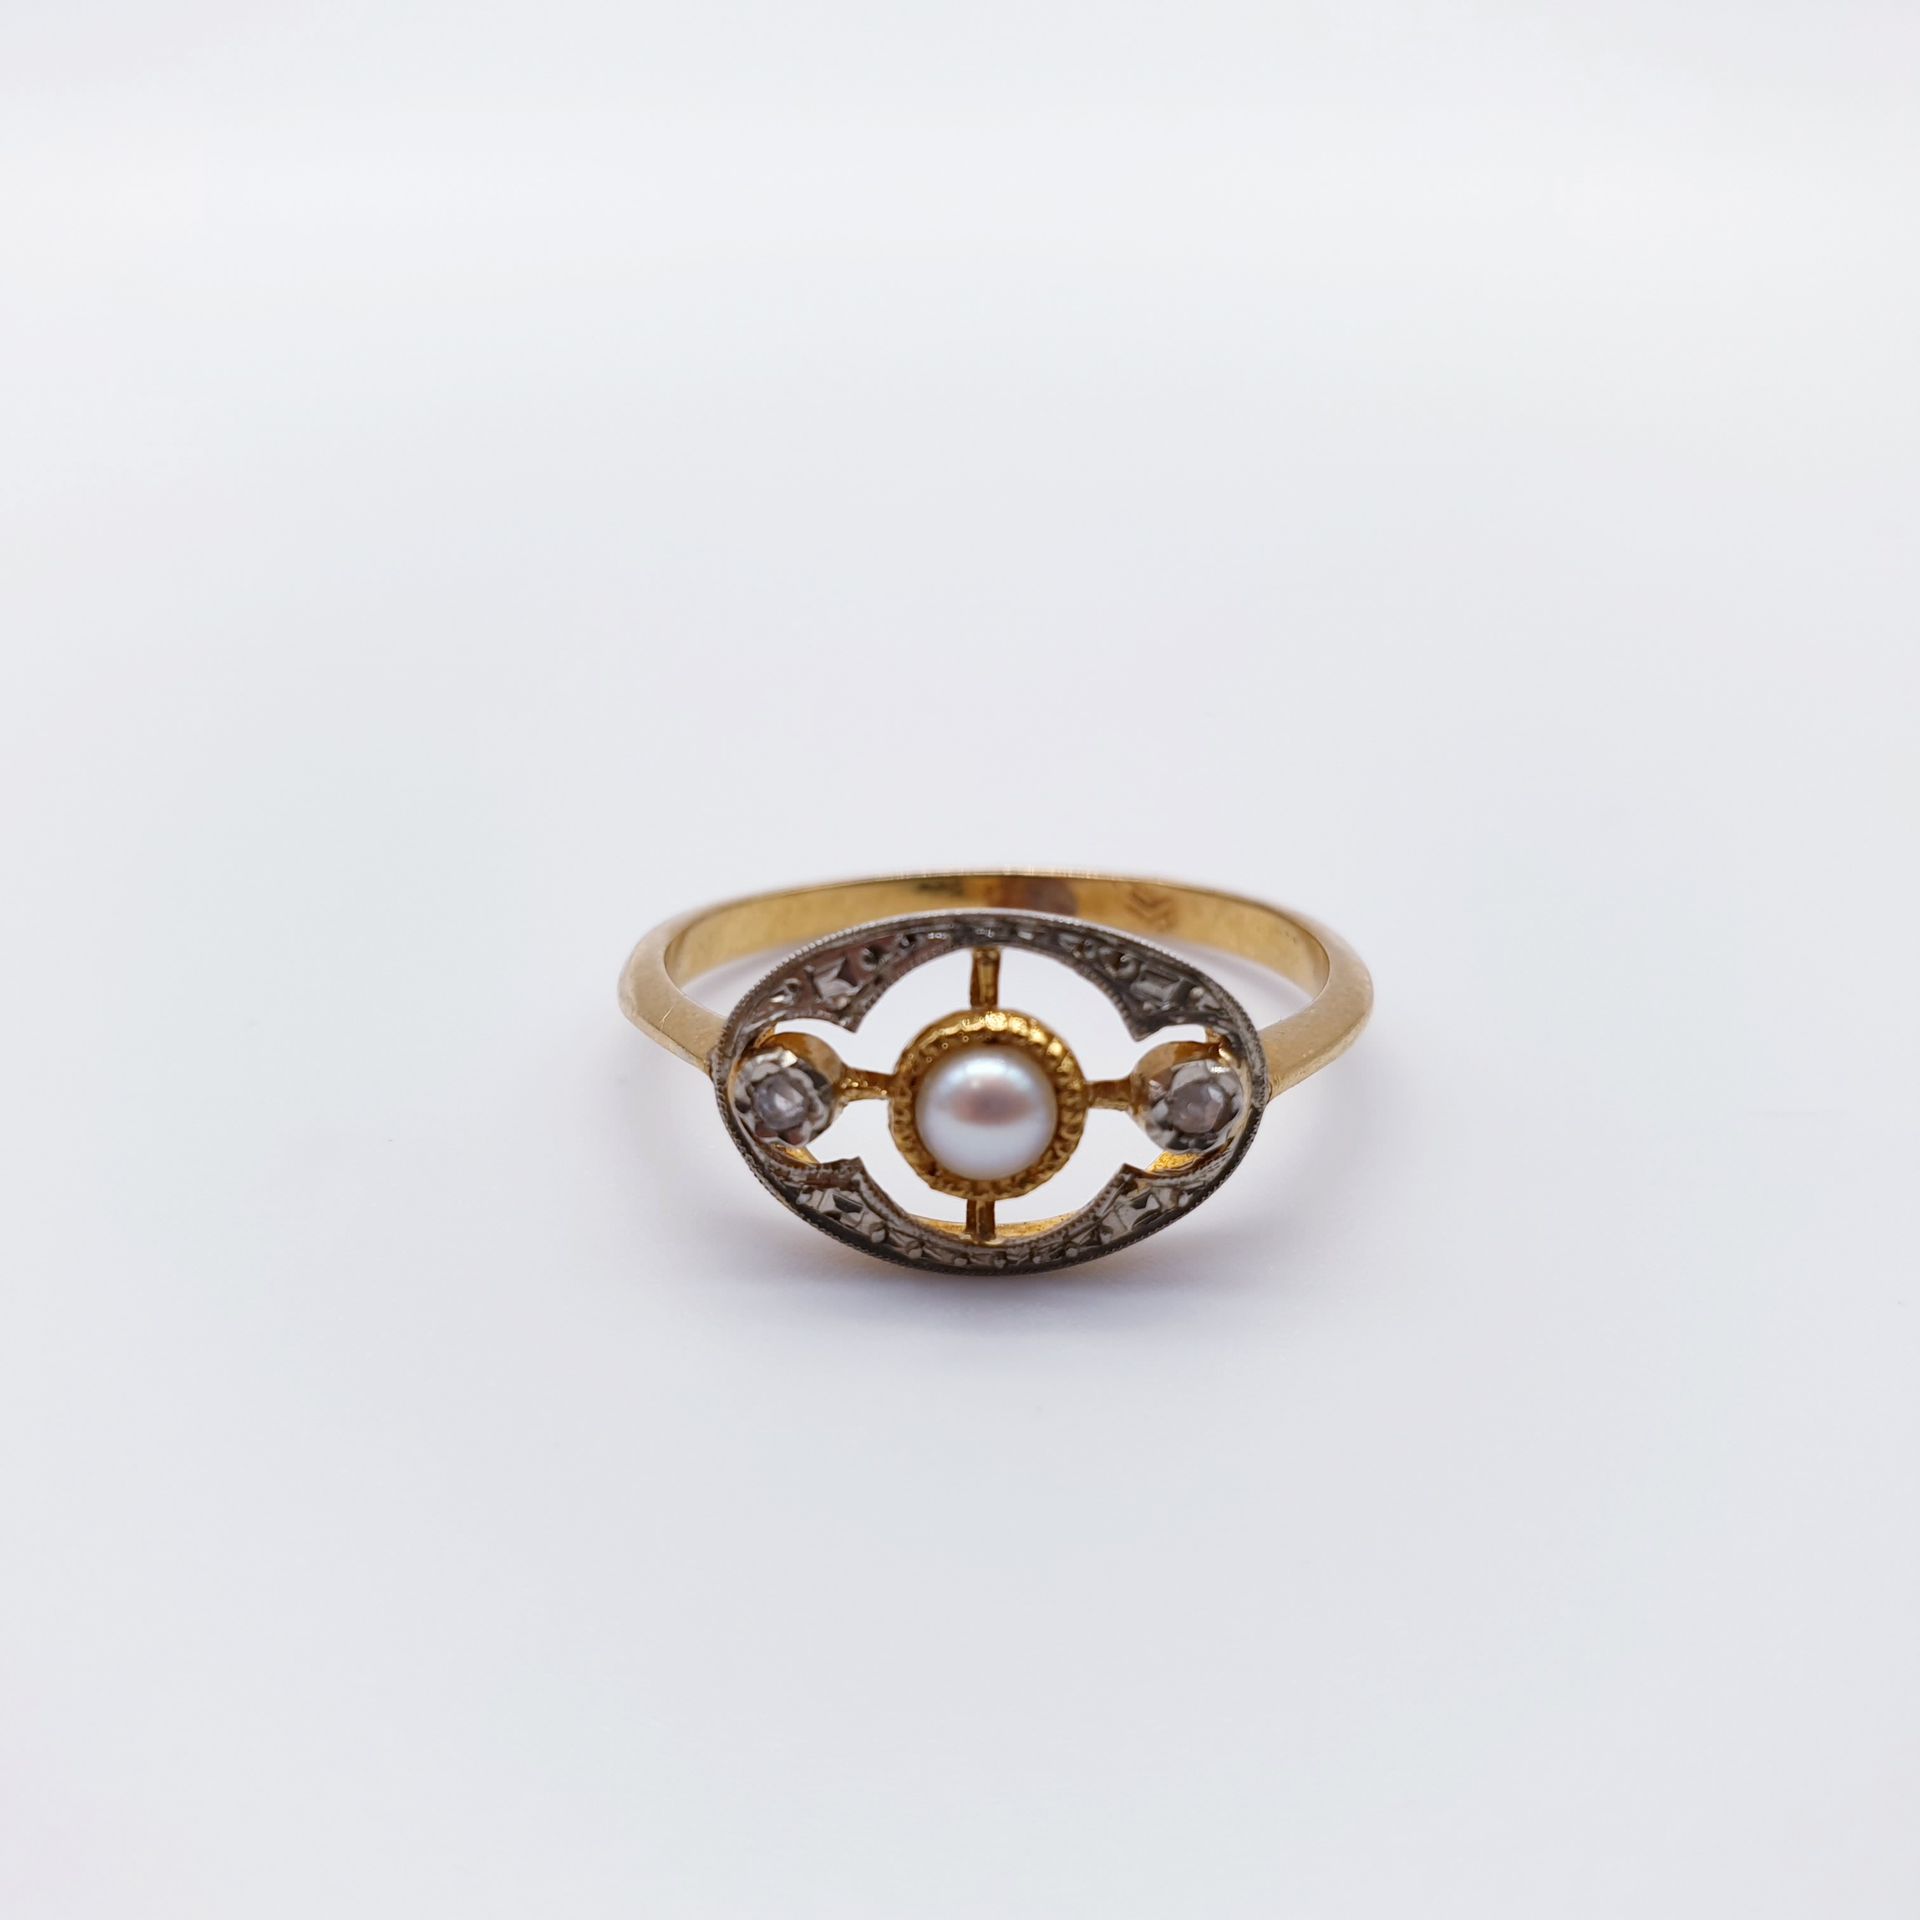 Null RING aus zweifarbigem Gold 750°, verziert mit einer Perle und zwei Rosen.

&hellip;